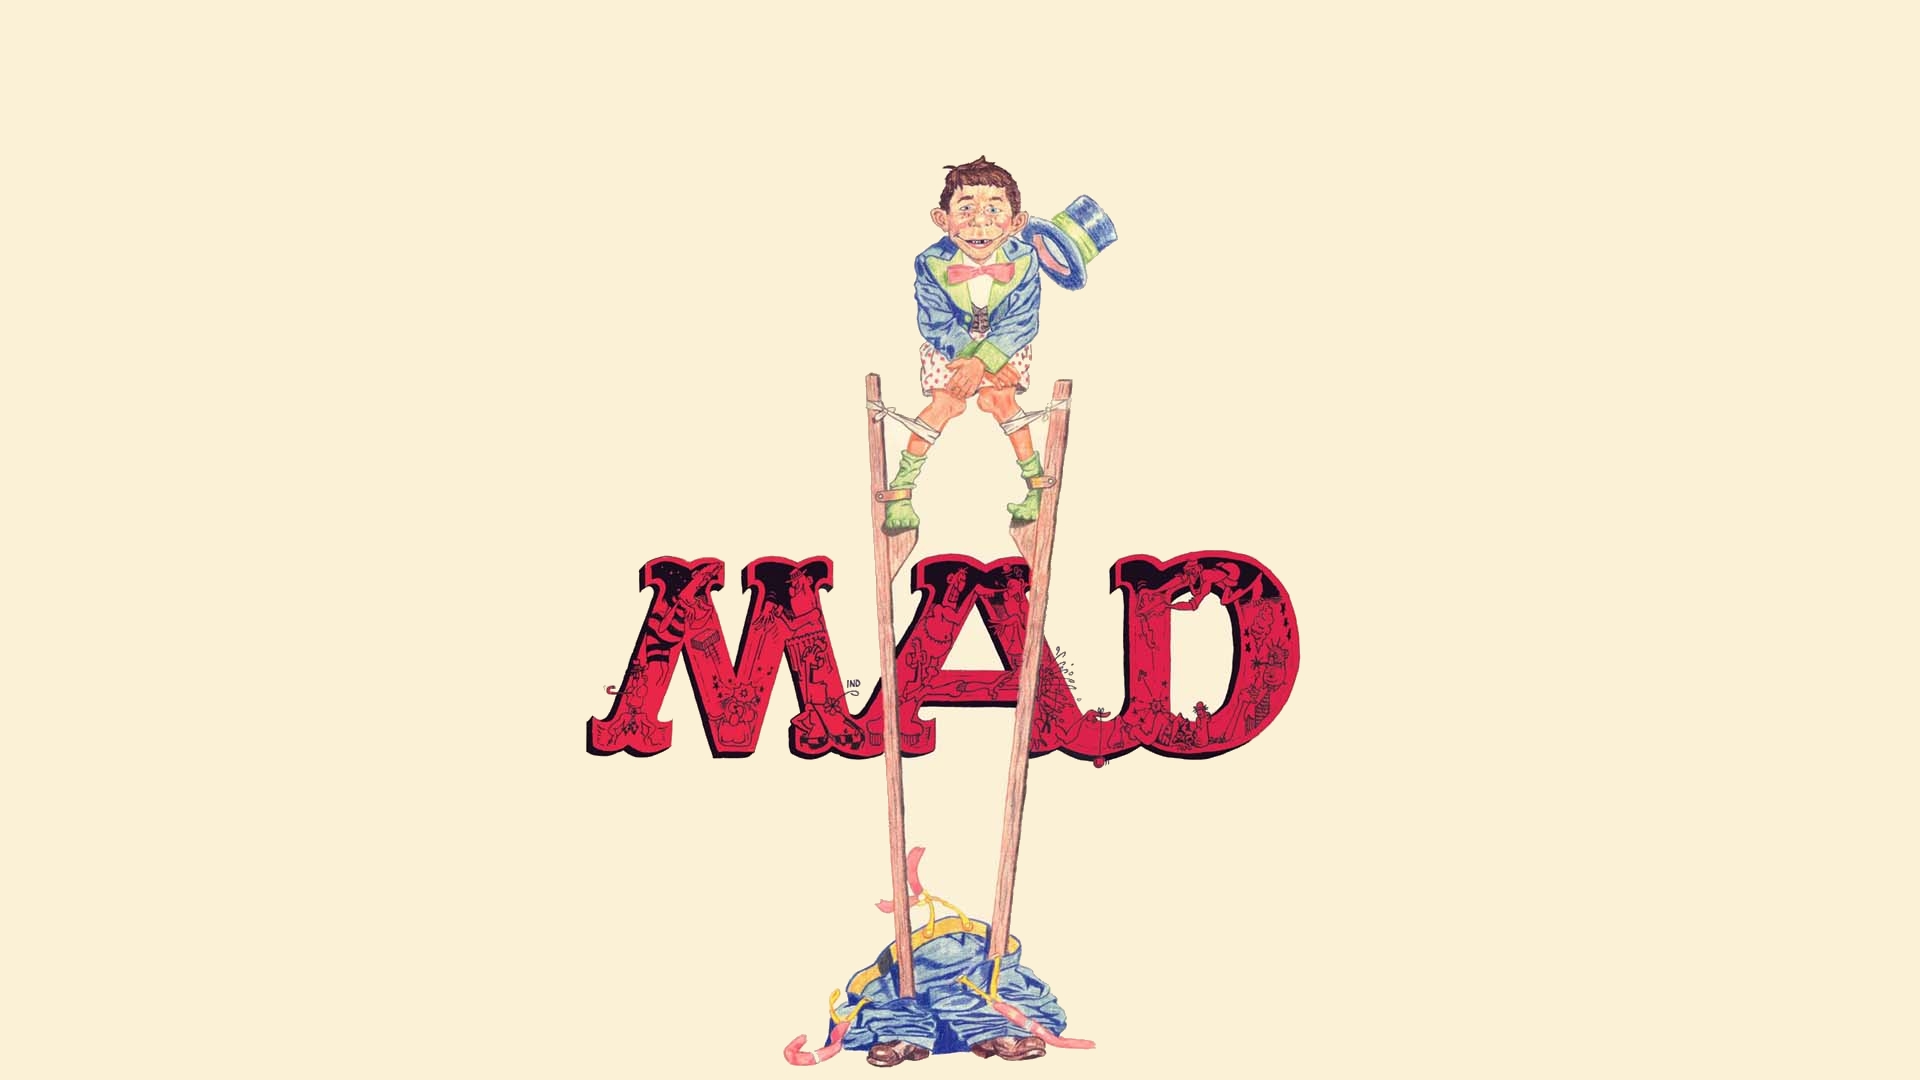 48+] Mad Max Game Wallpaper - WallpaperSafari